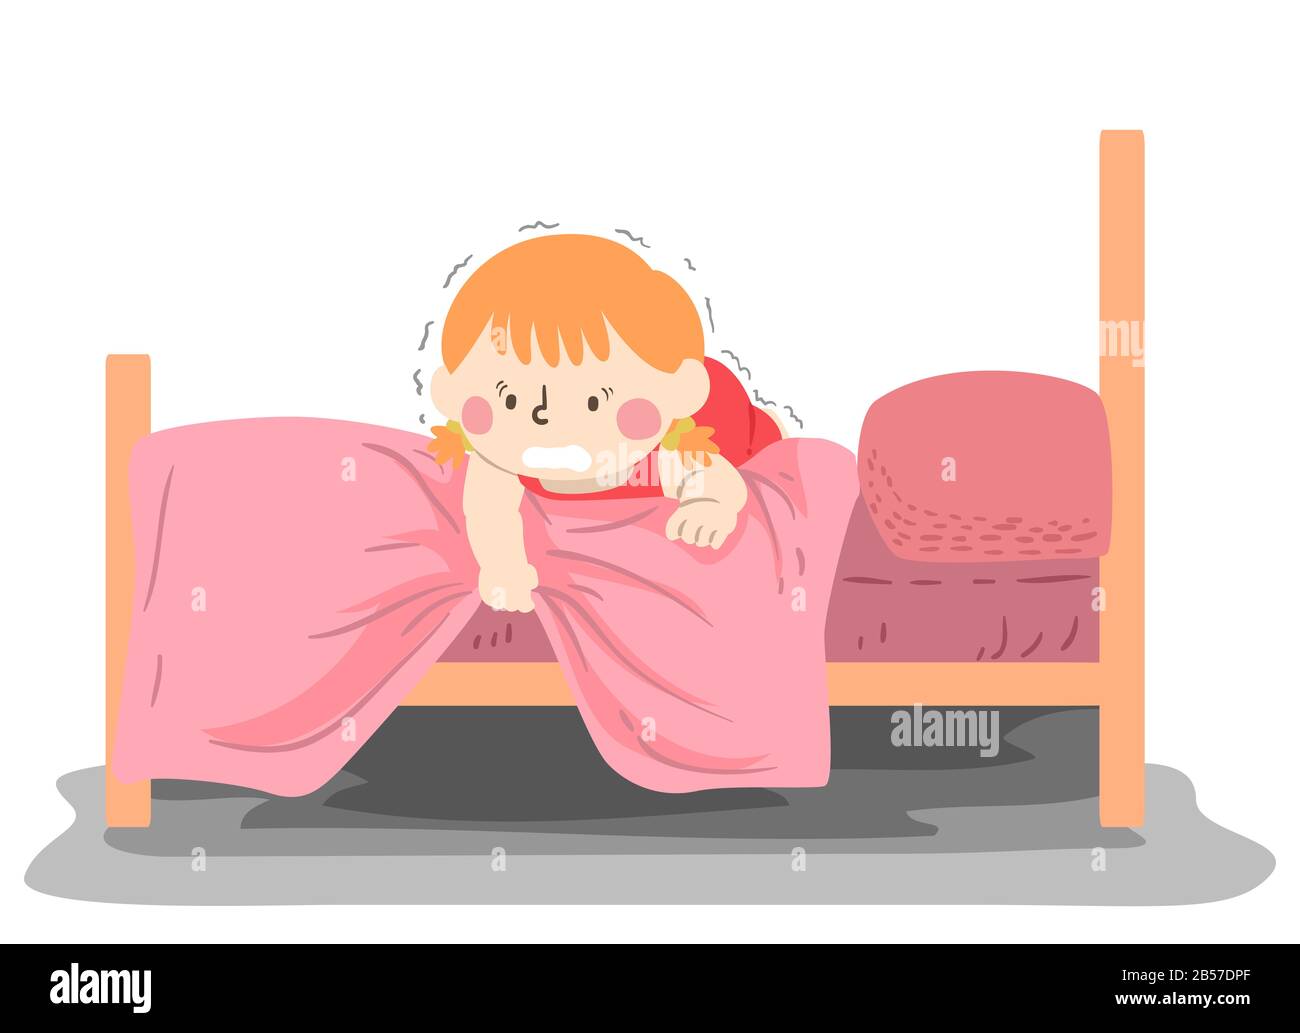 Ilustración de una niña Asustada Y Temblorosa Tirando De Su cubierta de la cama y Tratando de ver lo que está Debajo De Su cama Foto de stock